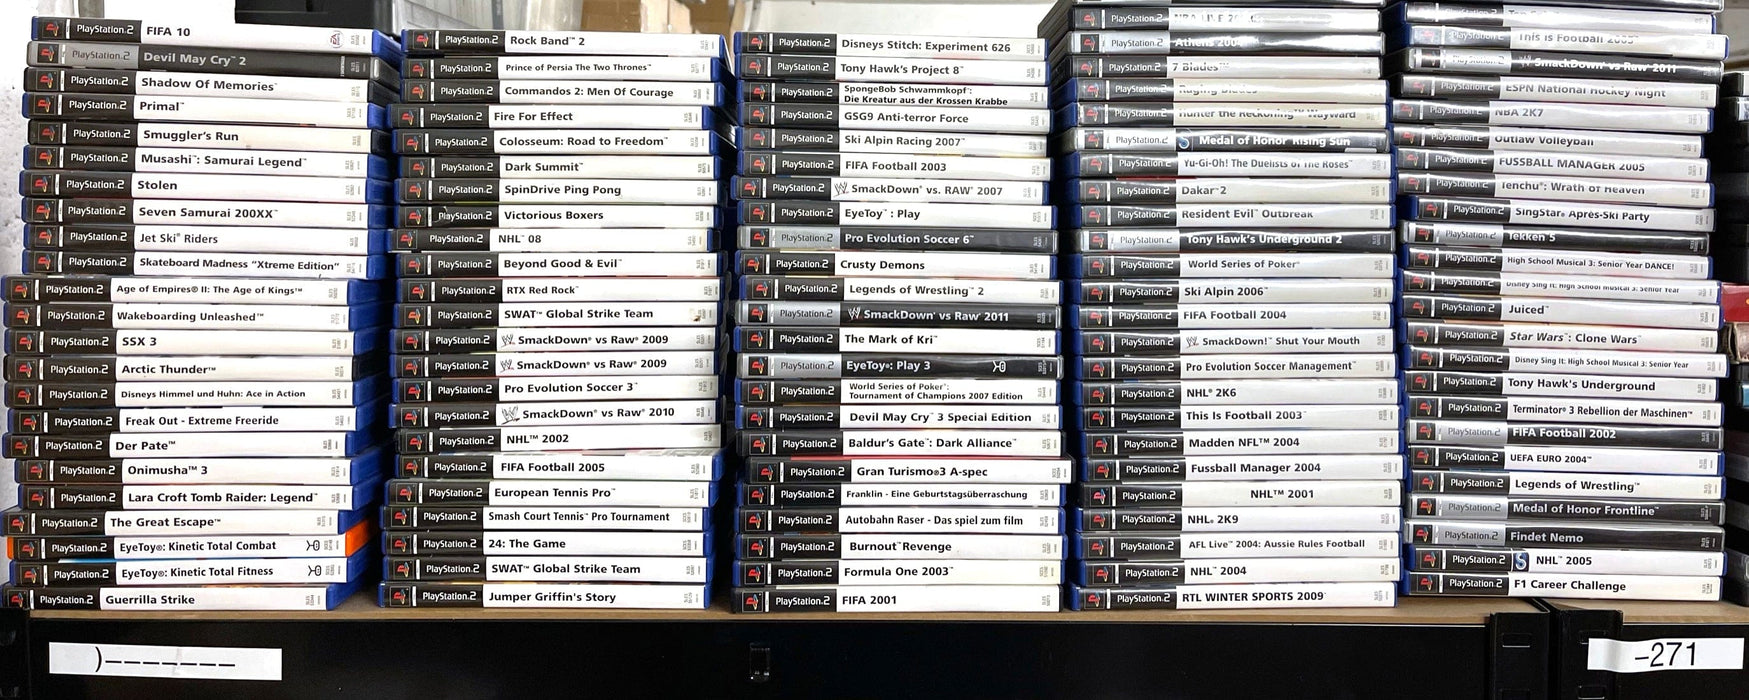 Glaciergames PlayStation 2 Game Pro Evolution Soccer 6 [Platinum] PlayStation 2 (Nr.162)